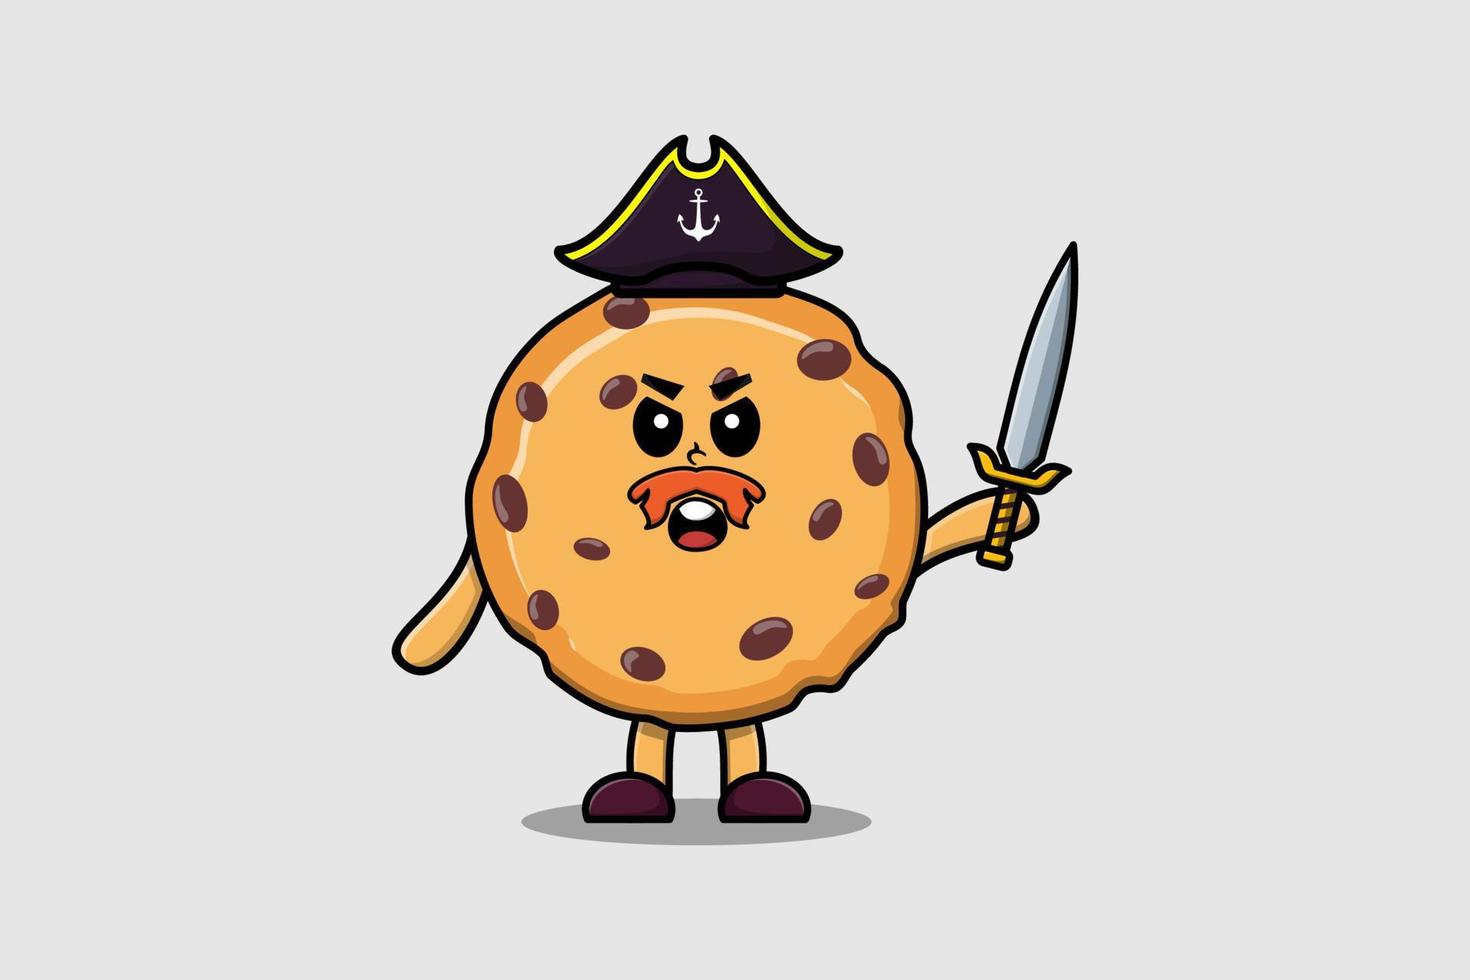 pirata de biscoitos de mascote bonito dos desenhos animados segurando a espada vetor